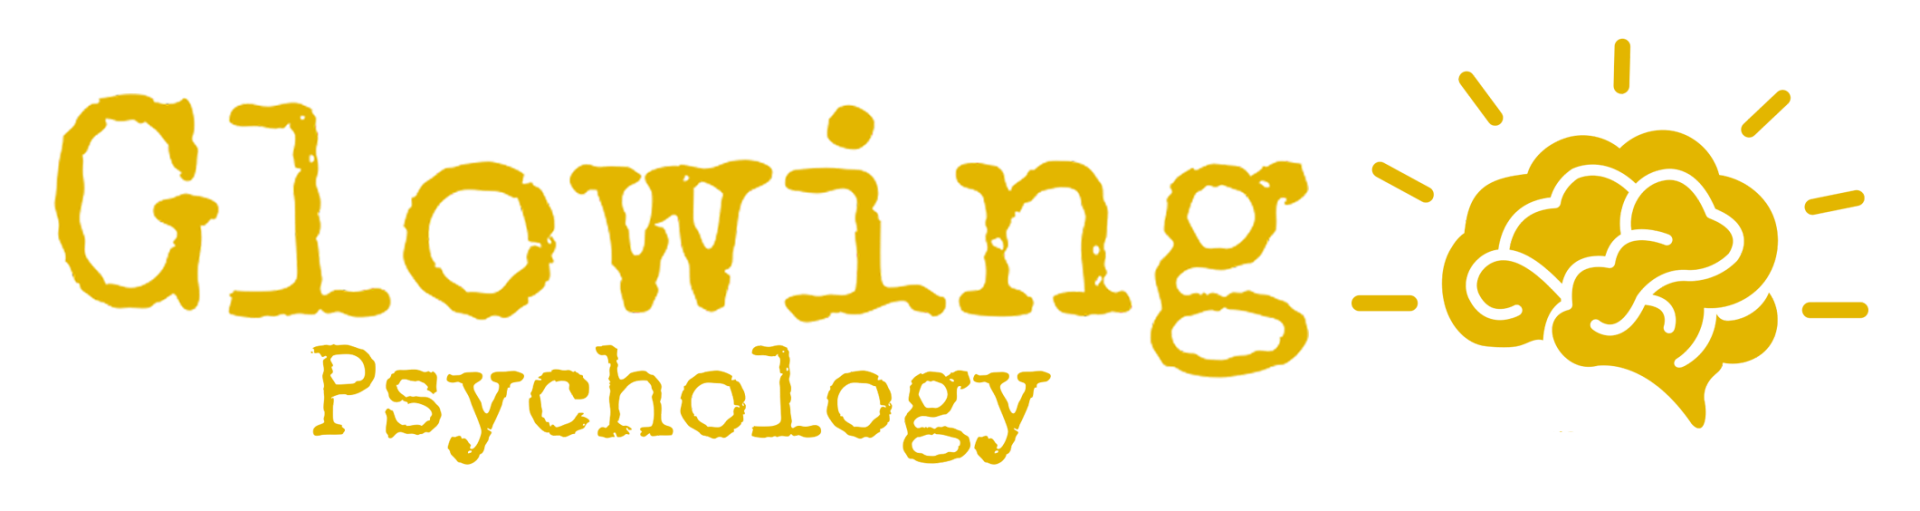 Glowing Psychology logos